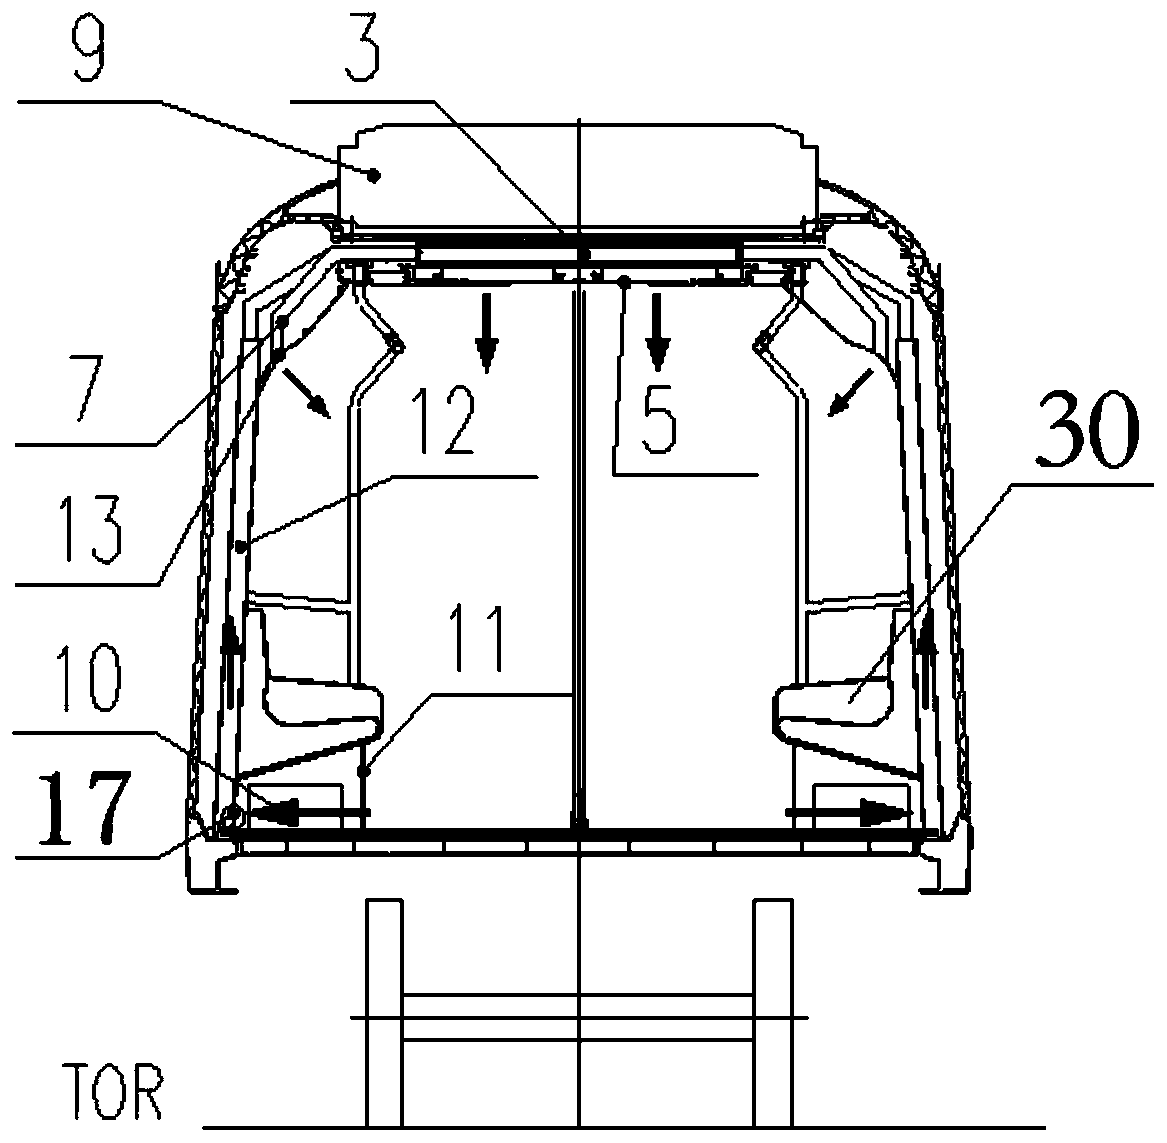 Subway vehicle air supply passage sealing device, air supply passage and return air supply passage